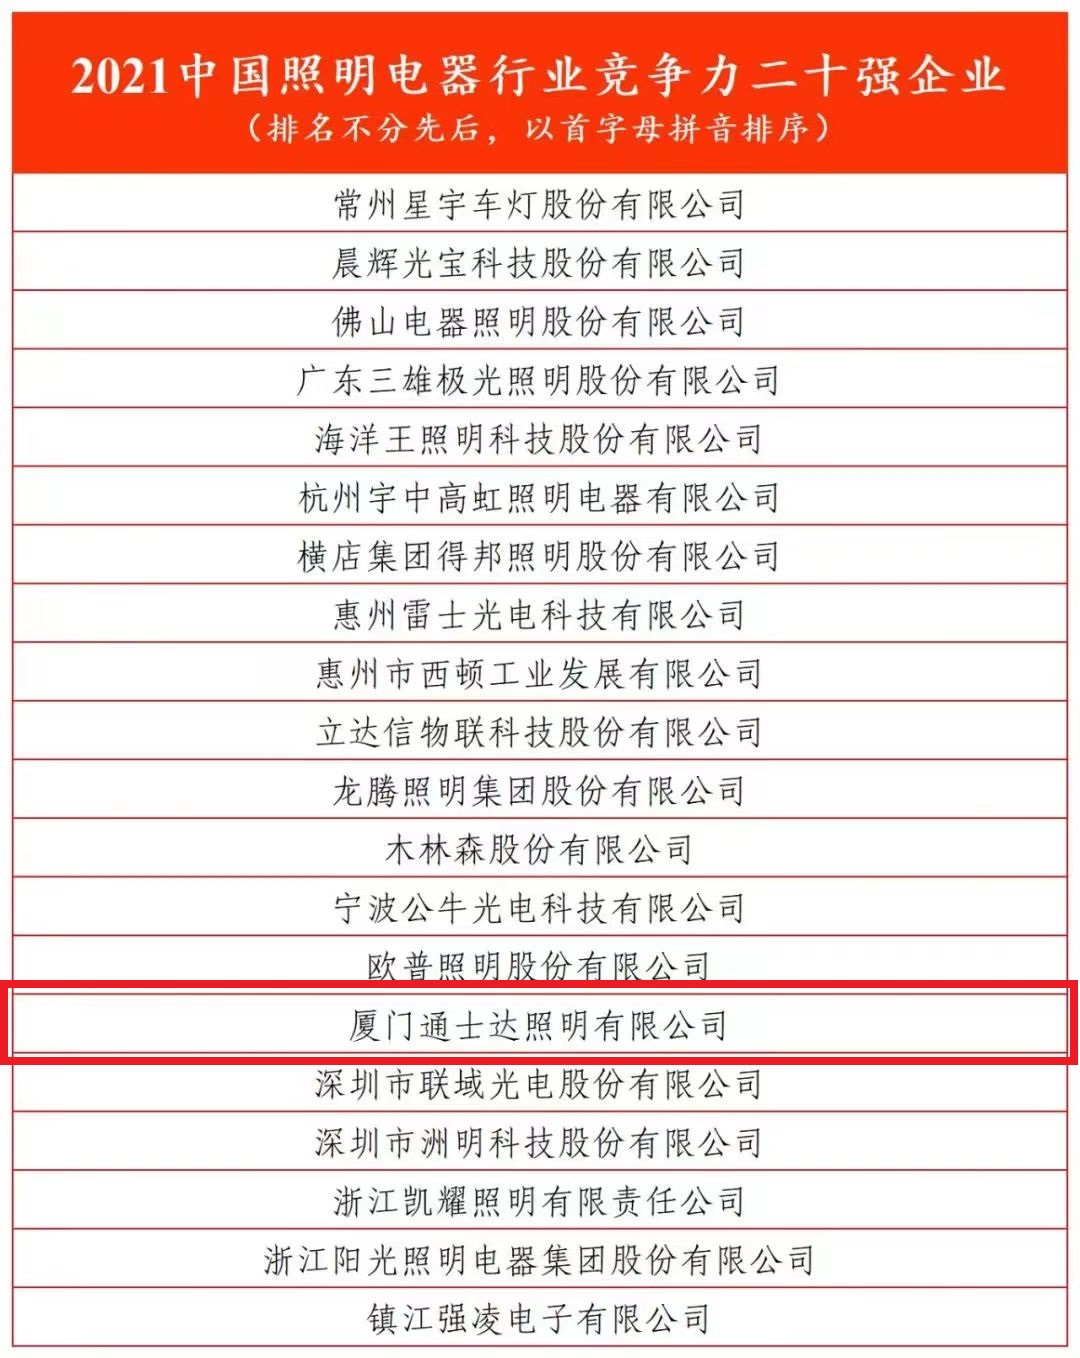 2021中国照明电器行业竞争力二十强企业（排名不分先后，以首字母拼音排序）.jpg